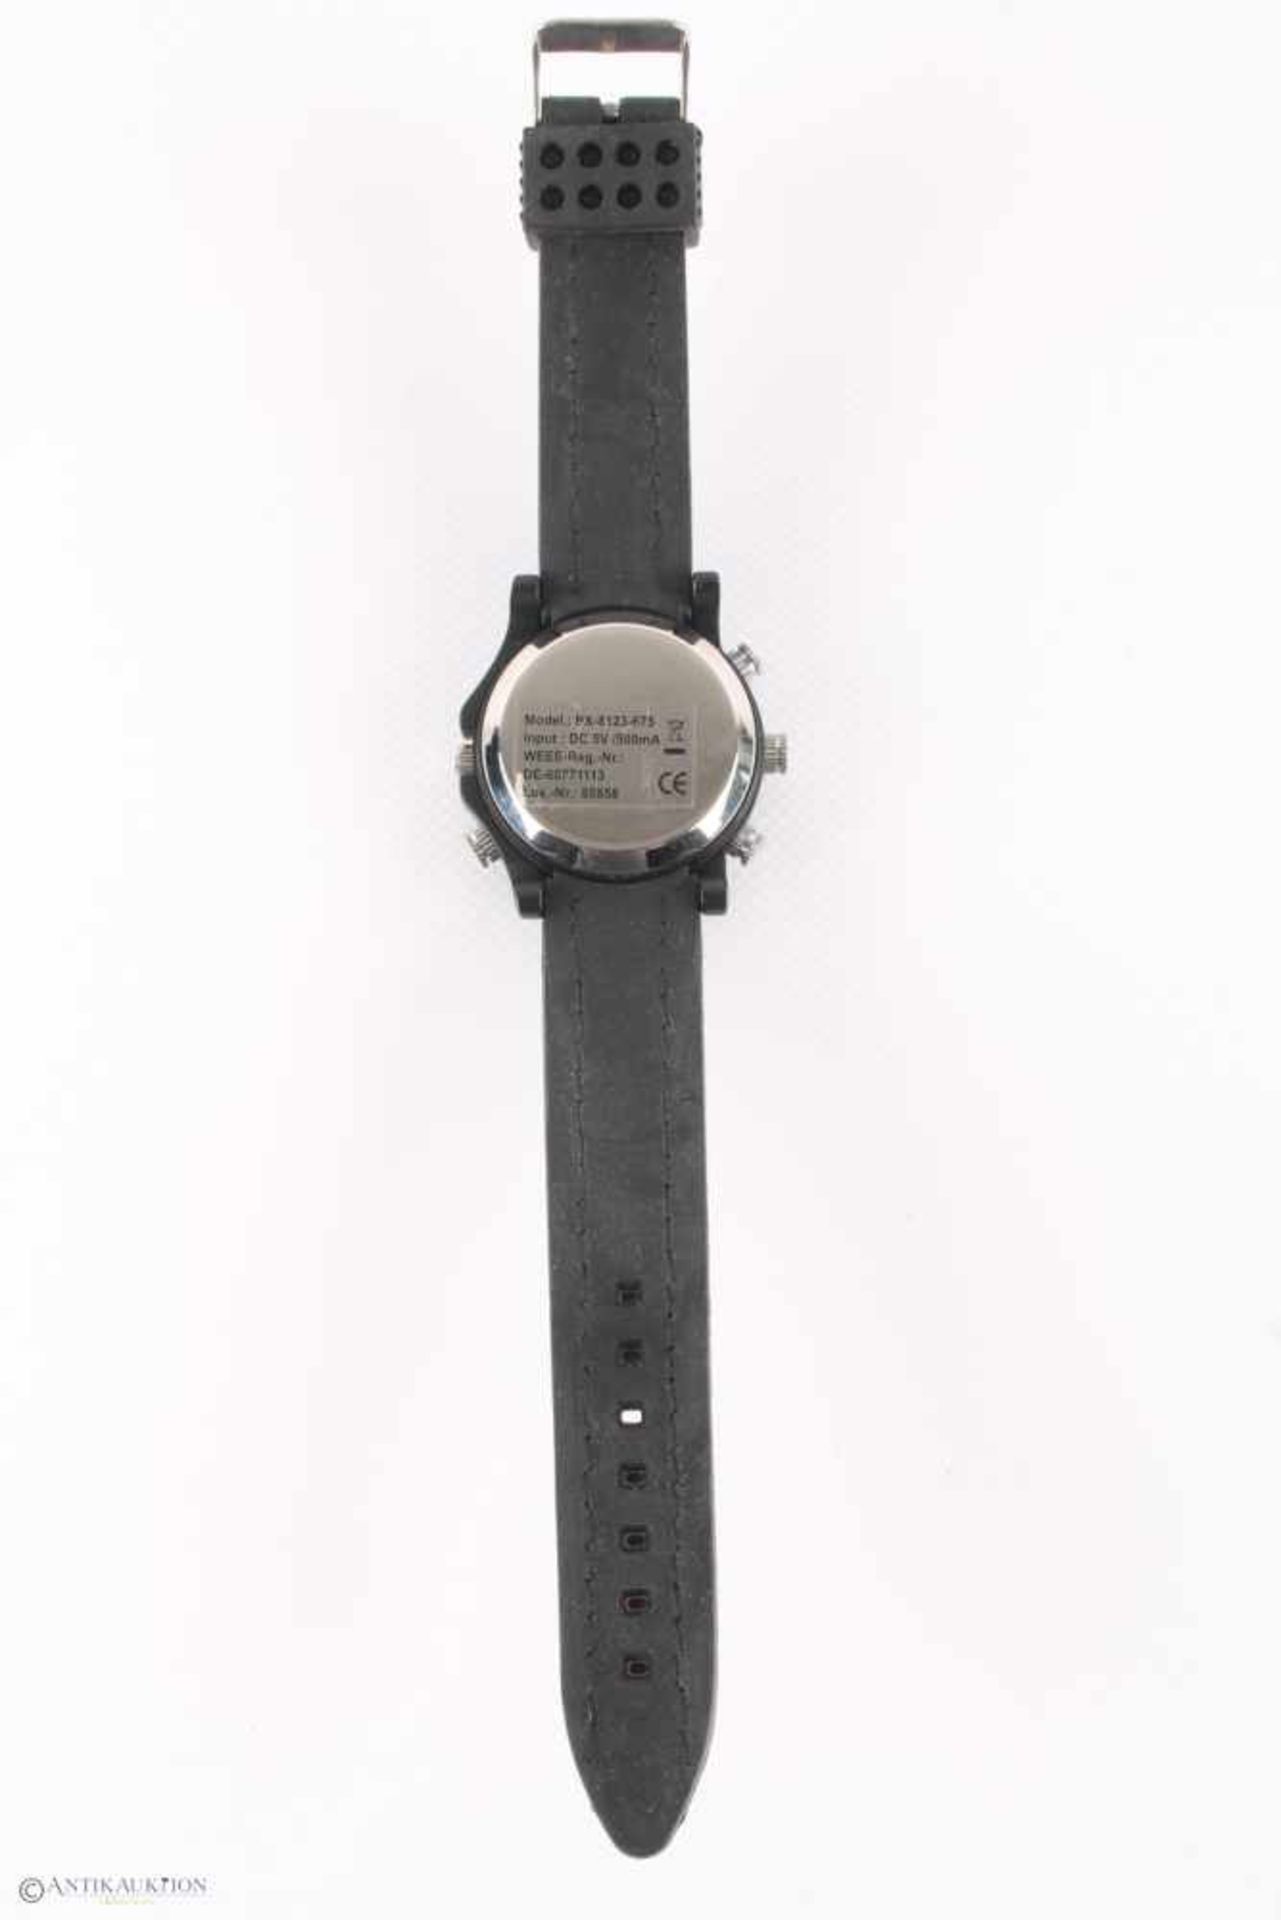 Octacam 5in1 Armbanduhr mit Video- und Fotokamera,Hau, Model PX-8123-675, Kunstoffgehäuse, - Bild 3 aus 3